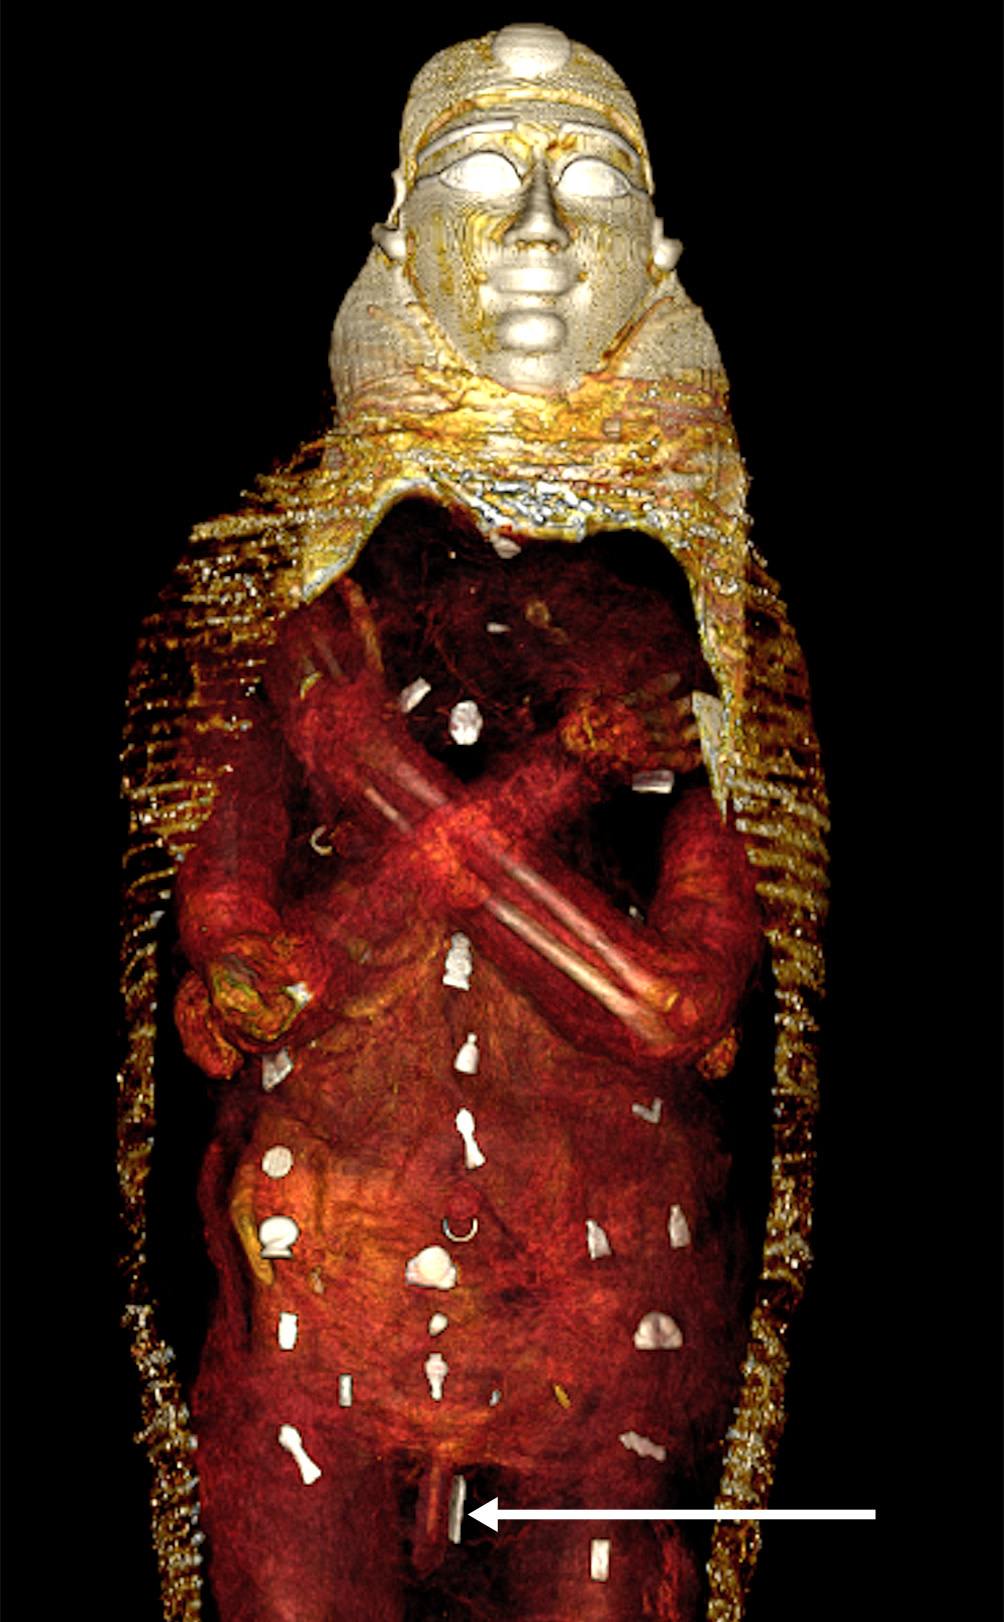 Medical Mummy